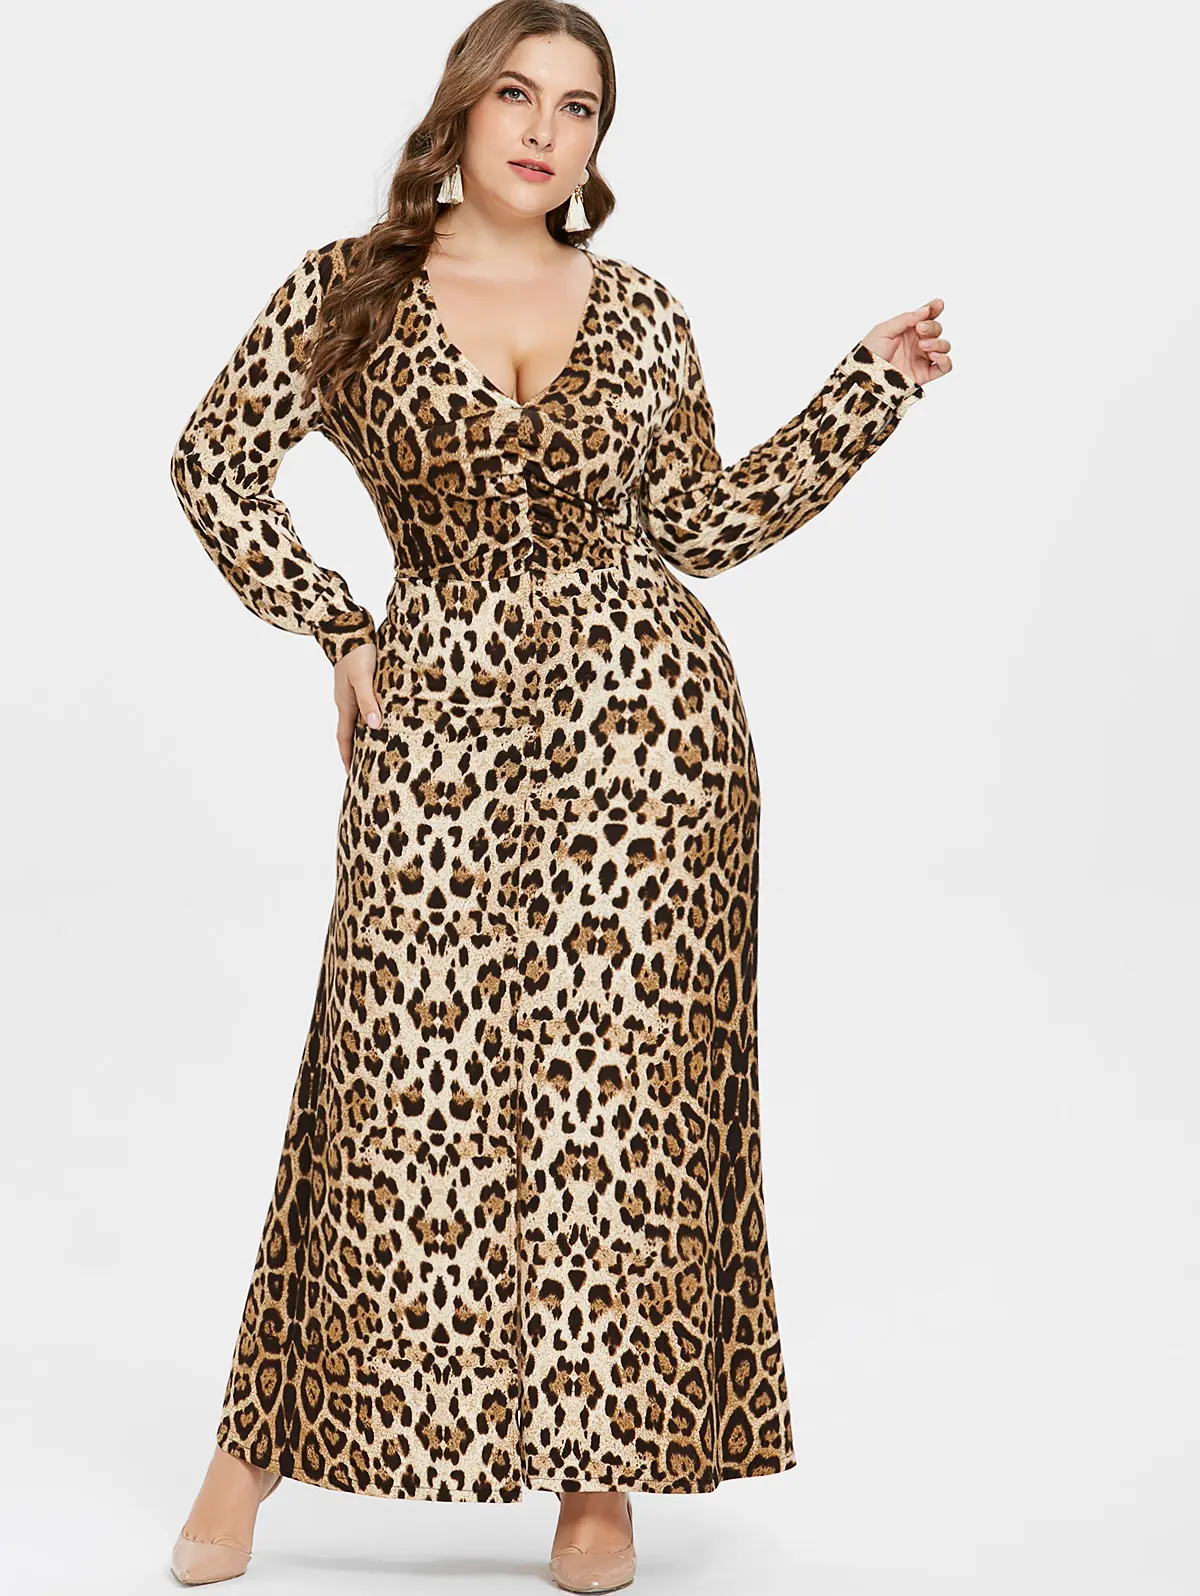 Wipalo размера плюс, сексуальное леопардовое платье с v-образным вырезом, женское платье с длинным рукавом по щиколотку, Повседневная Осенняя Женская одежда, большие размеры, Vestido